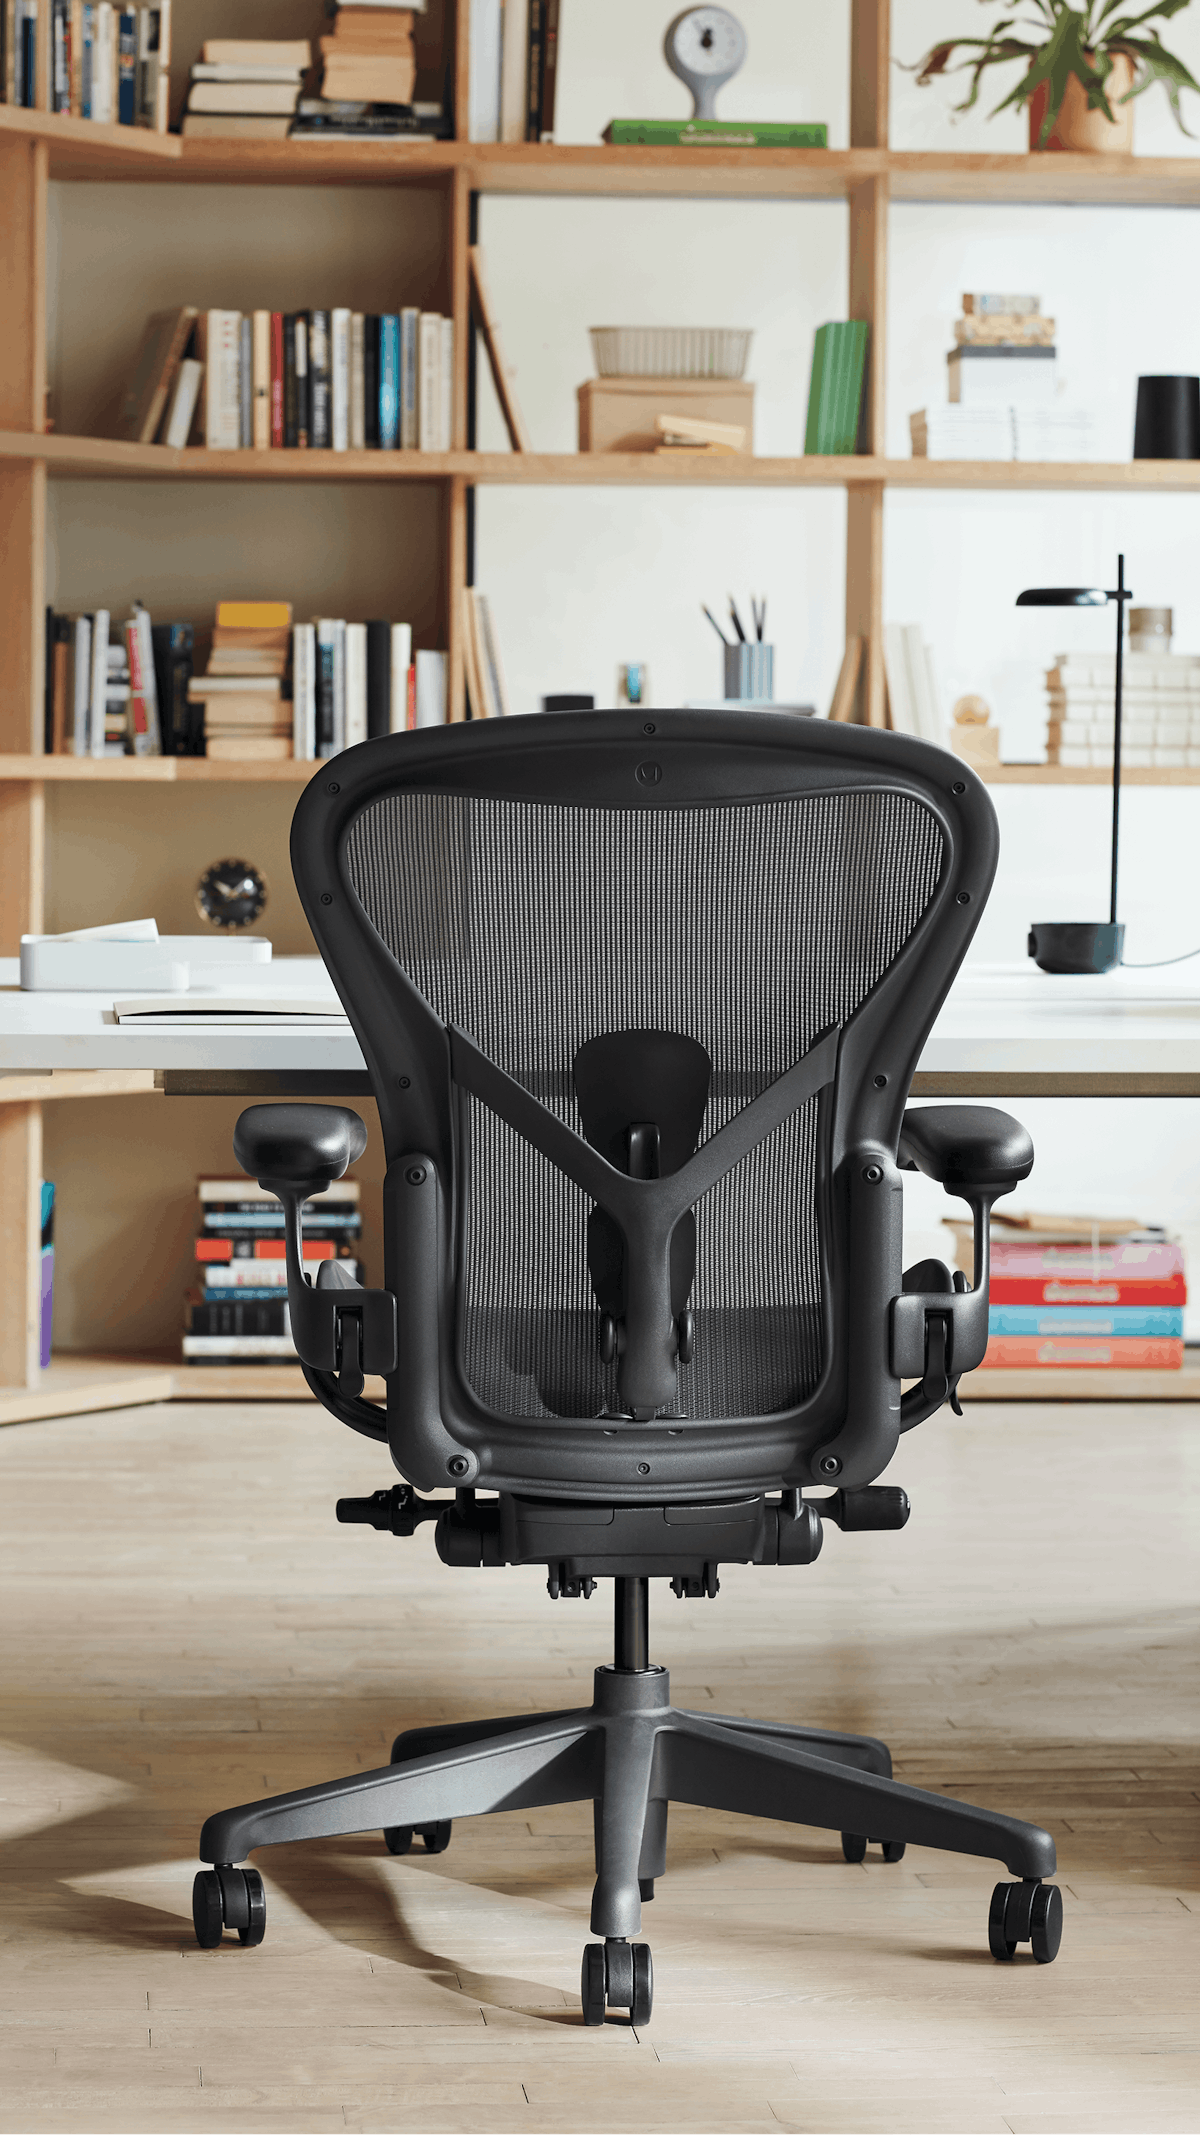 Aeron Chair, Consumer Summer Lifestyle 2019 Shoot